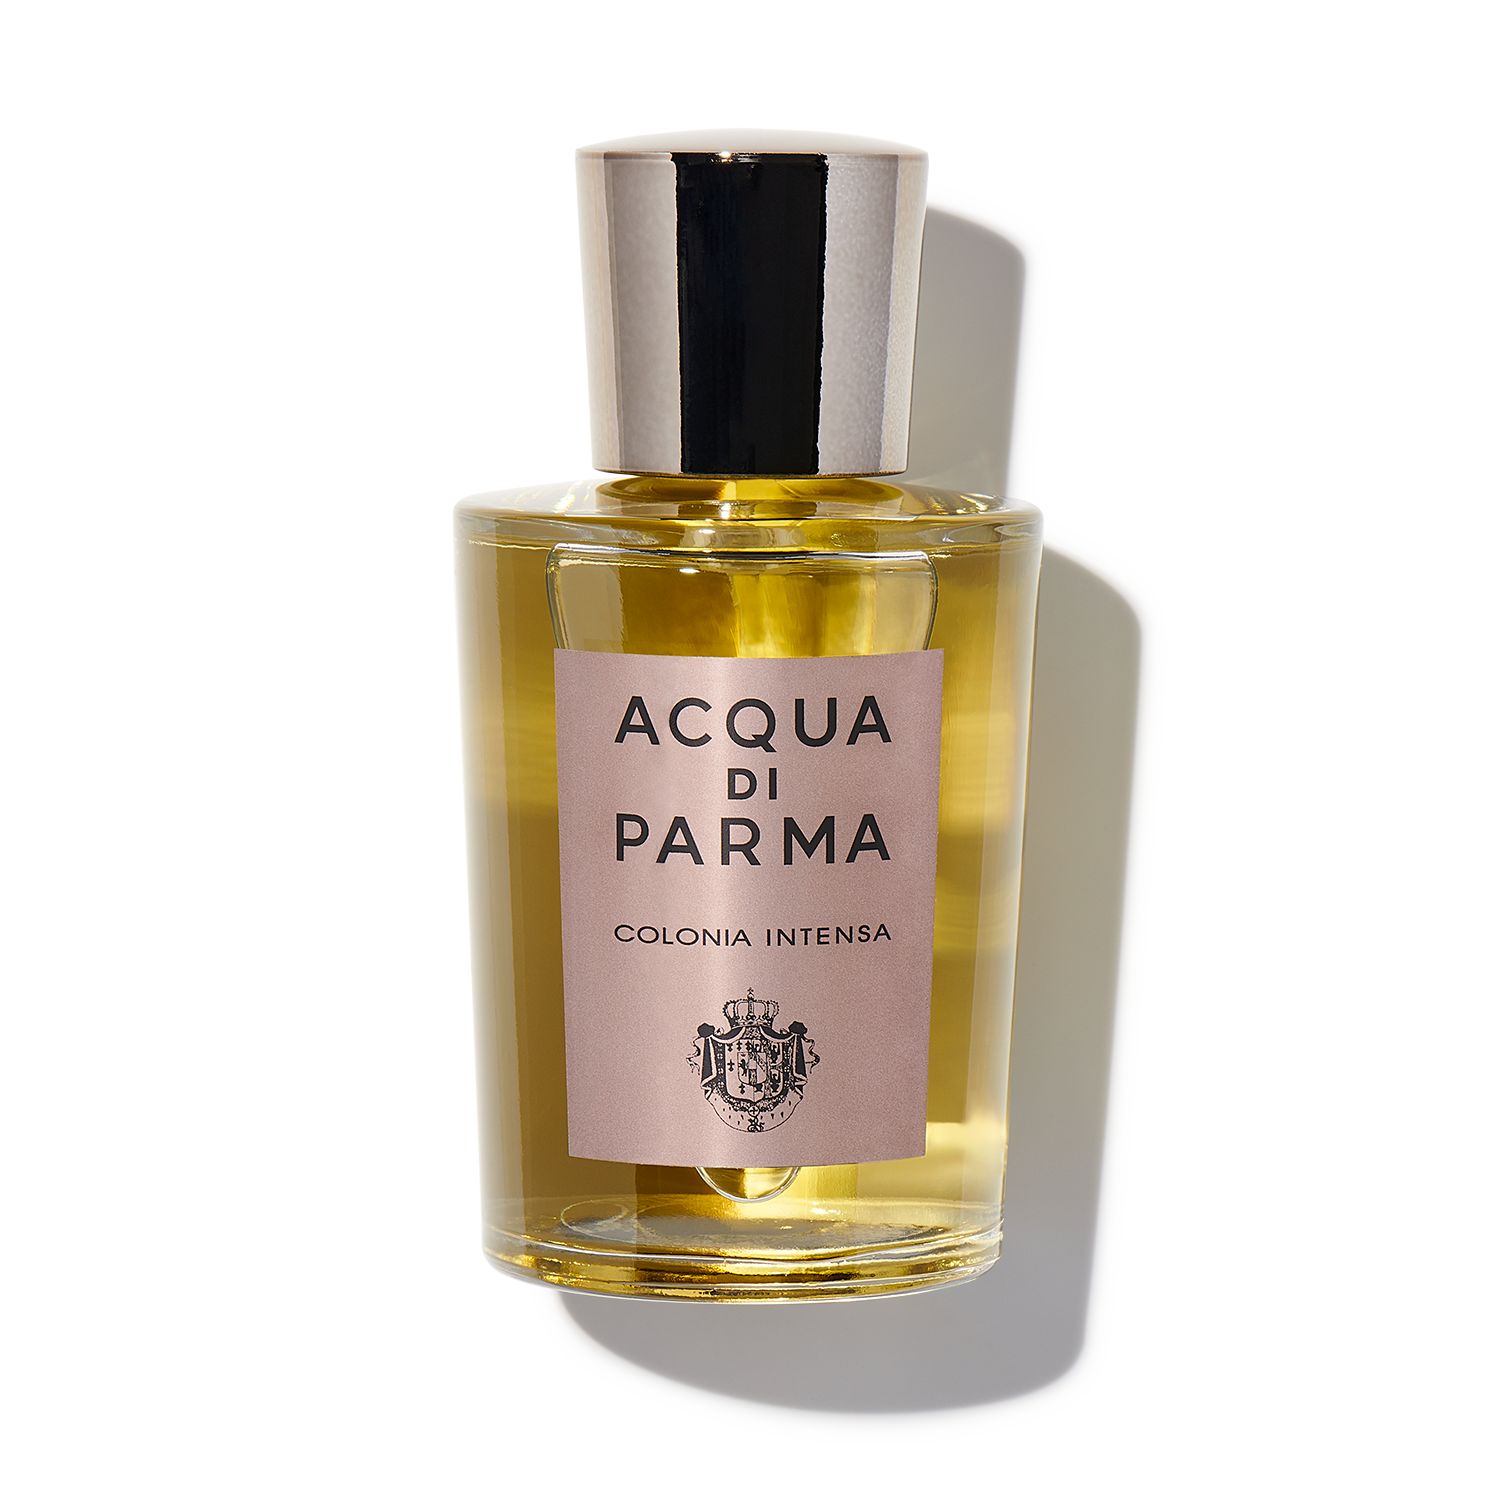 Acqua di Parma Colonia Futura For Men Eau De Cologne 180ml (Fragrance,Men)